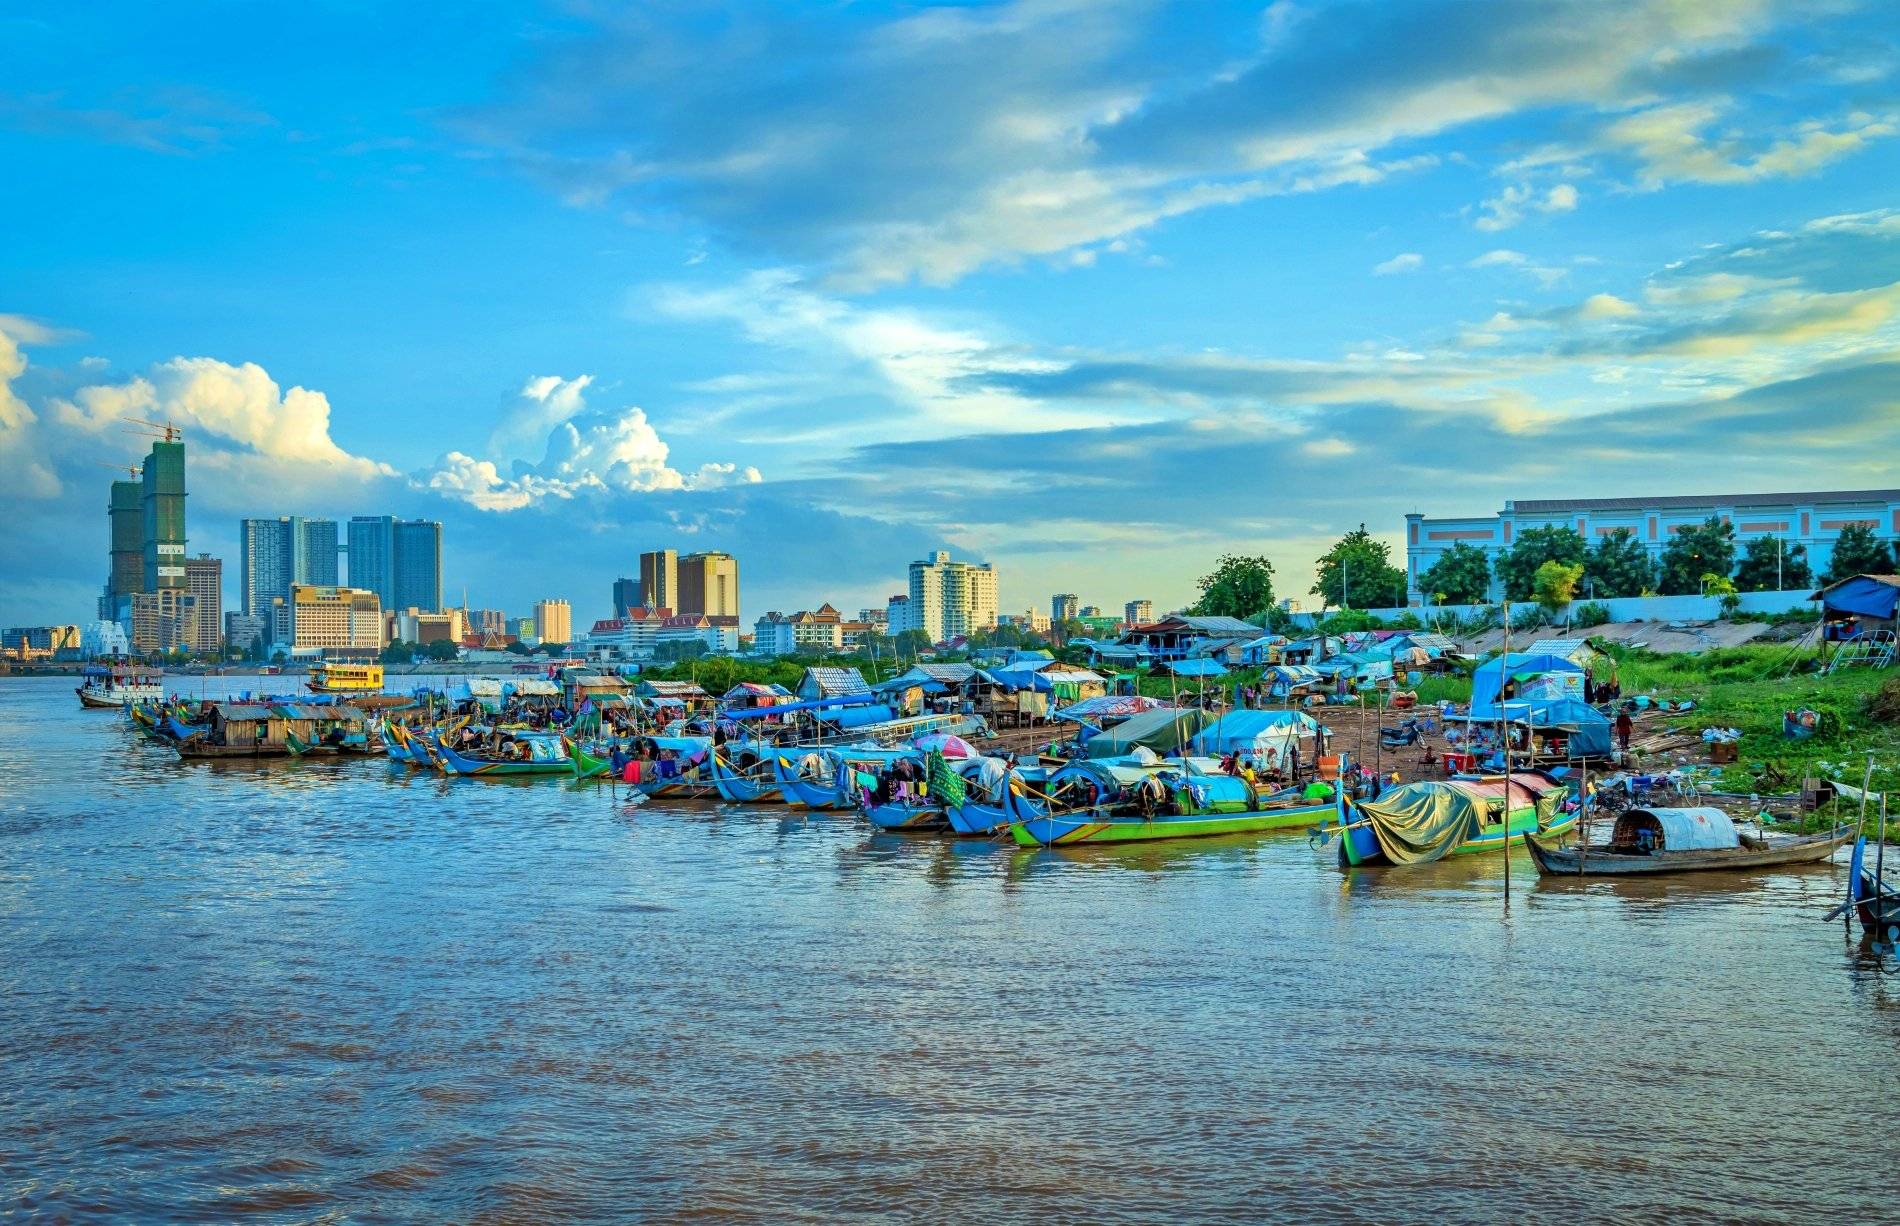 Erkunden Sie die Umgebung von Phnom Penh auf eigene Faust